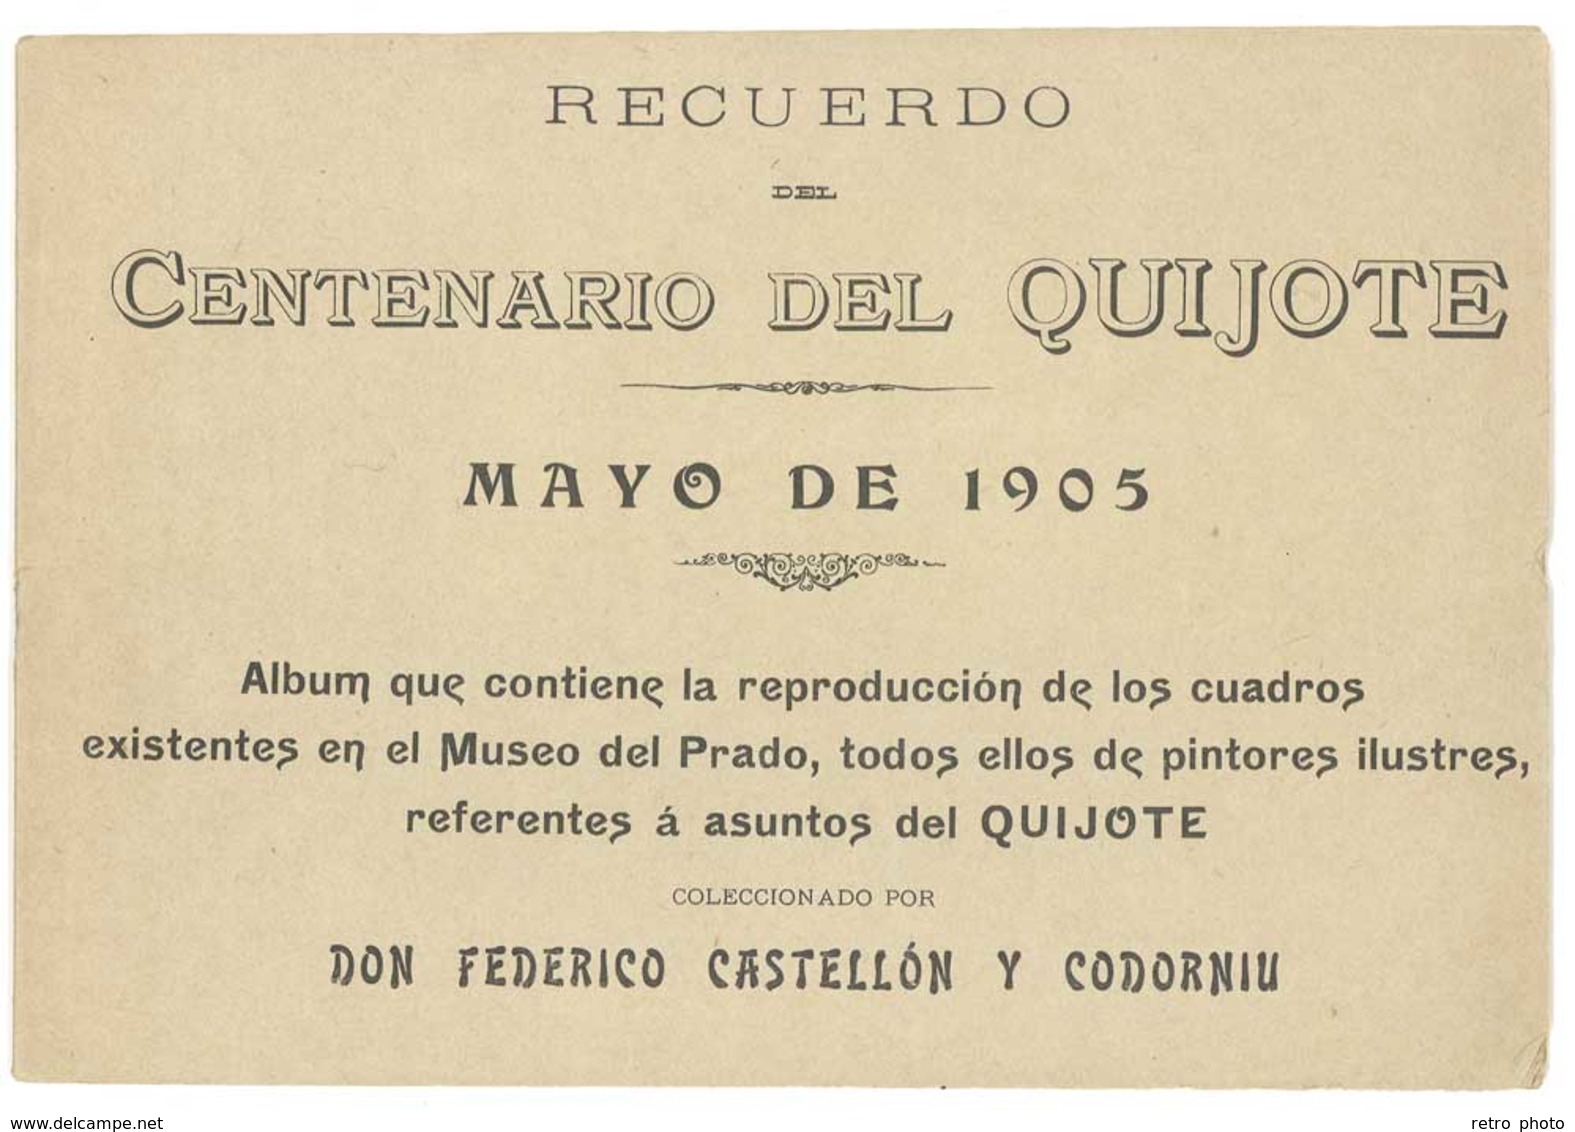 Livre Recuerdo Del Centenario Del Quijote, Mayo De 1905 (... Cuadros De Los Cuadros Museo Del Prado ..., Cervantes .. ) - Littérature